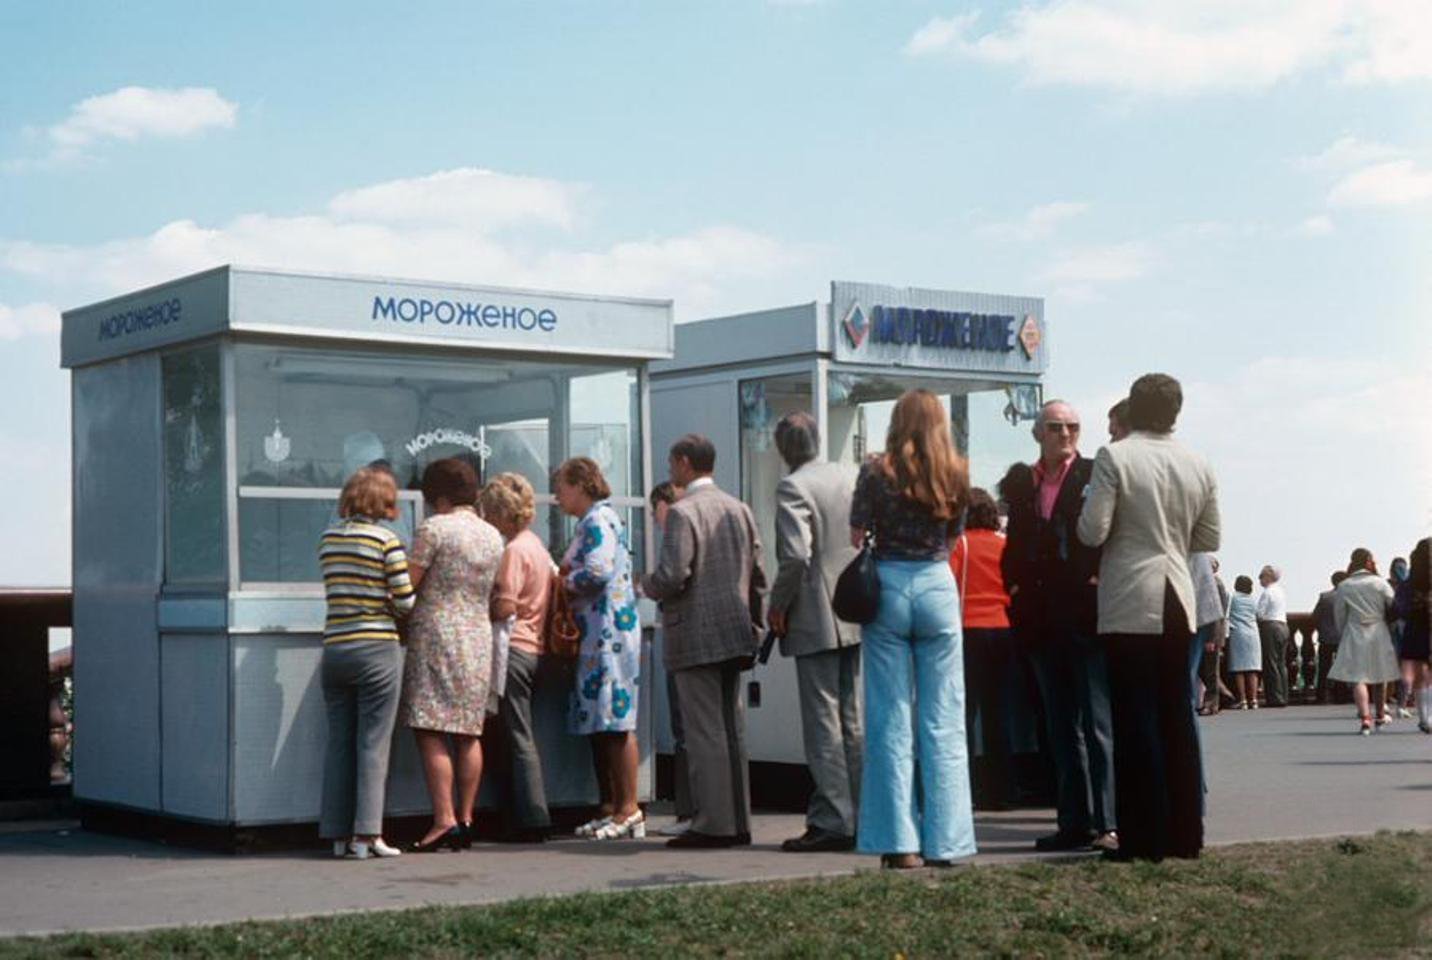 Киоски с мороженым на смотровой площадке МГУ. Москва 1974 год